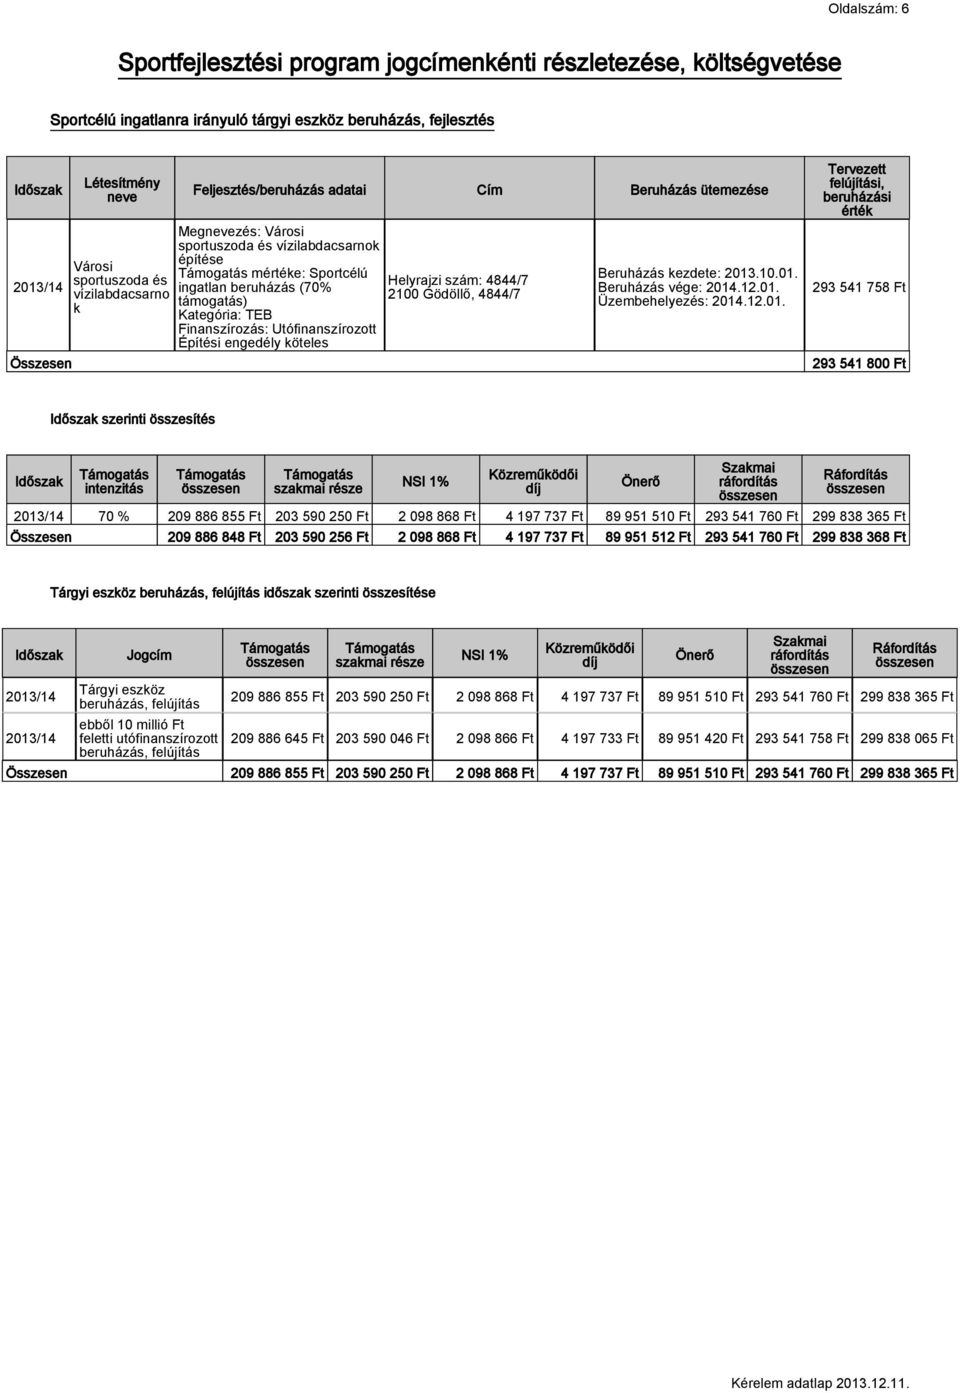 Kategória: TEB Finanszírozás: Utófinanszírozott Építési engedély köteles Helyrajzi szám: 4844/7 2100 Gödöllő, 4844/7 Beruházás kezdete: 2013